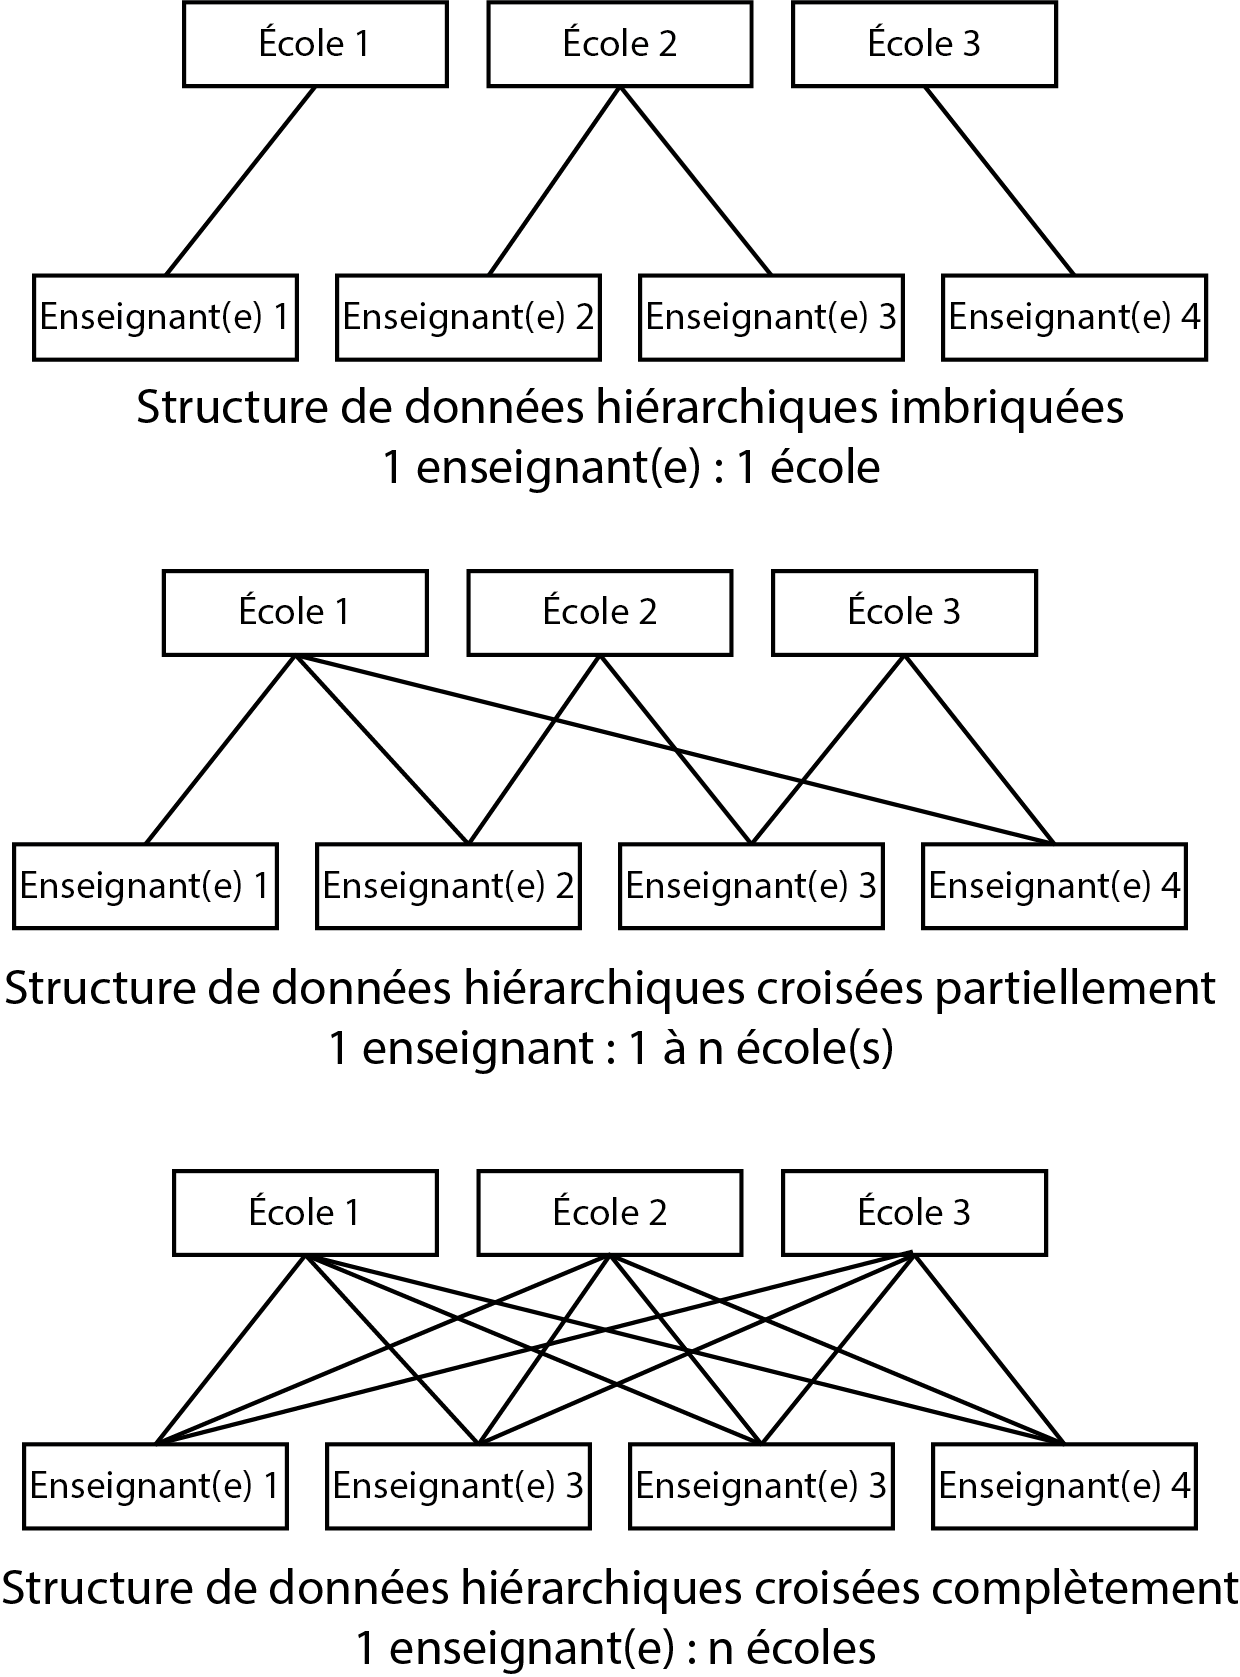 Différentes structures de données hiérarchiques (imbriquée versus croisée)